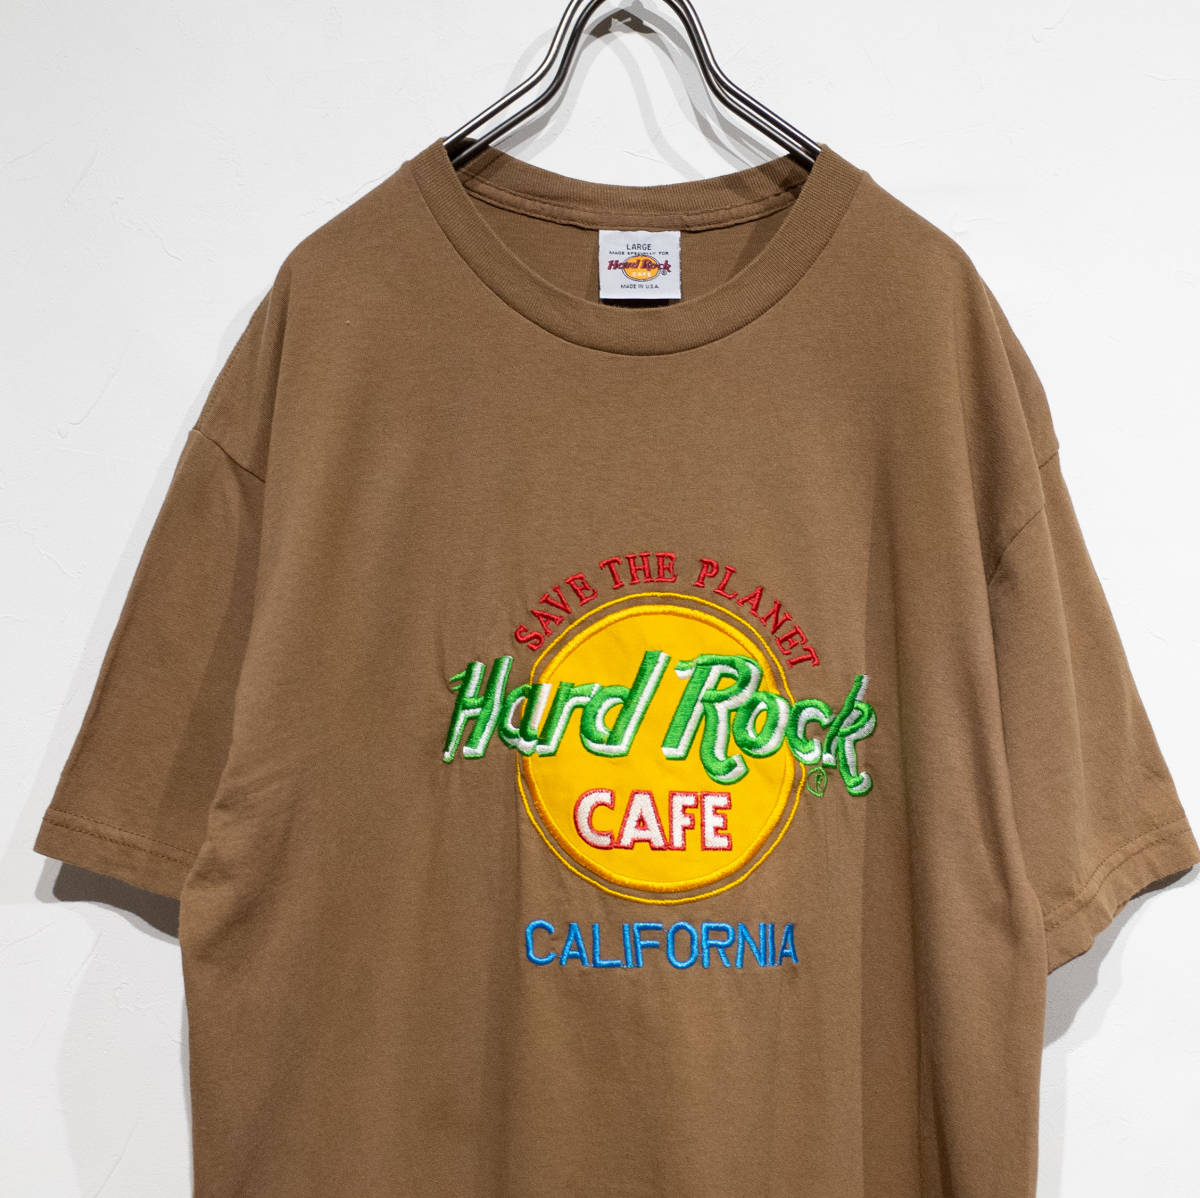 USA製 ハードロックカフェ HARD ROCK CAFE カリフォルニア アースカラー 刺繍 Tシャツ ワンピース 茶 モカ 西海岸 サーファー レディースL